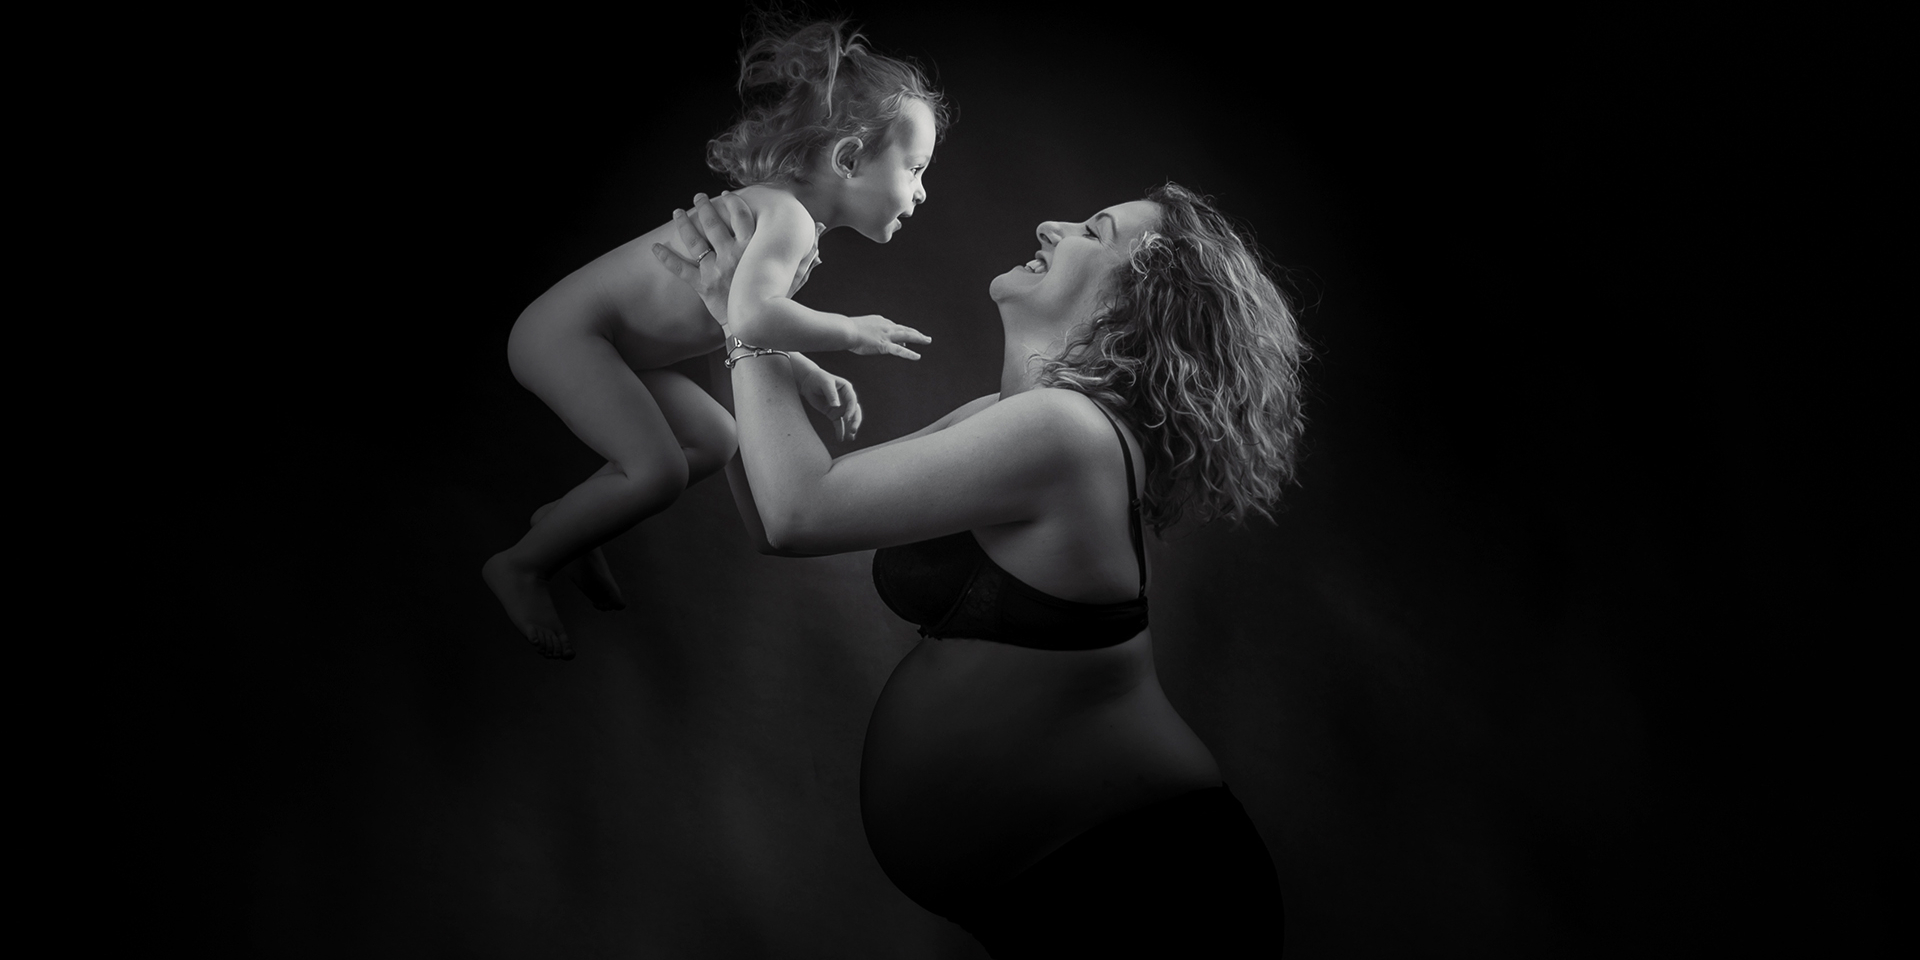 Pose dans le mouvement d'un maman et son enfant en studio en noir en blanc.